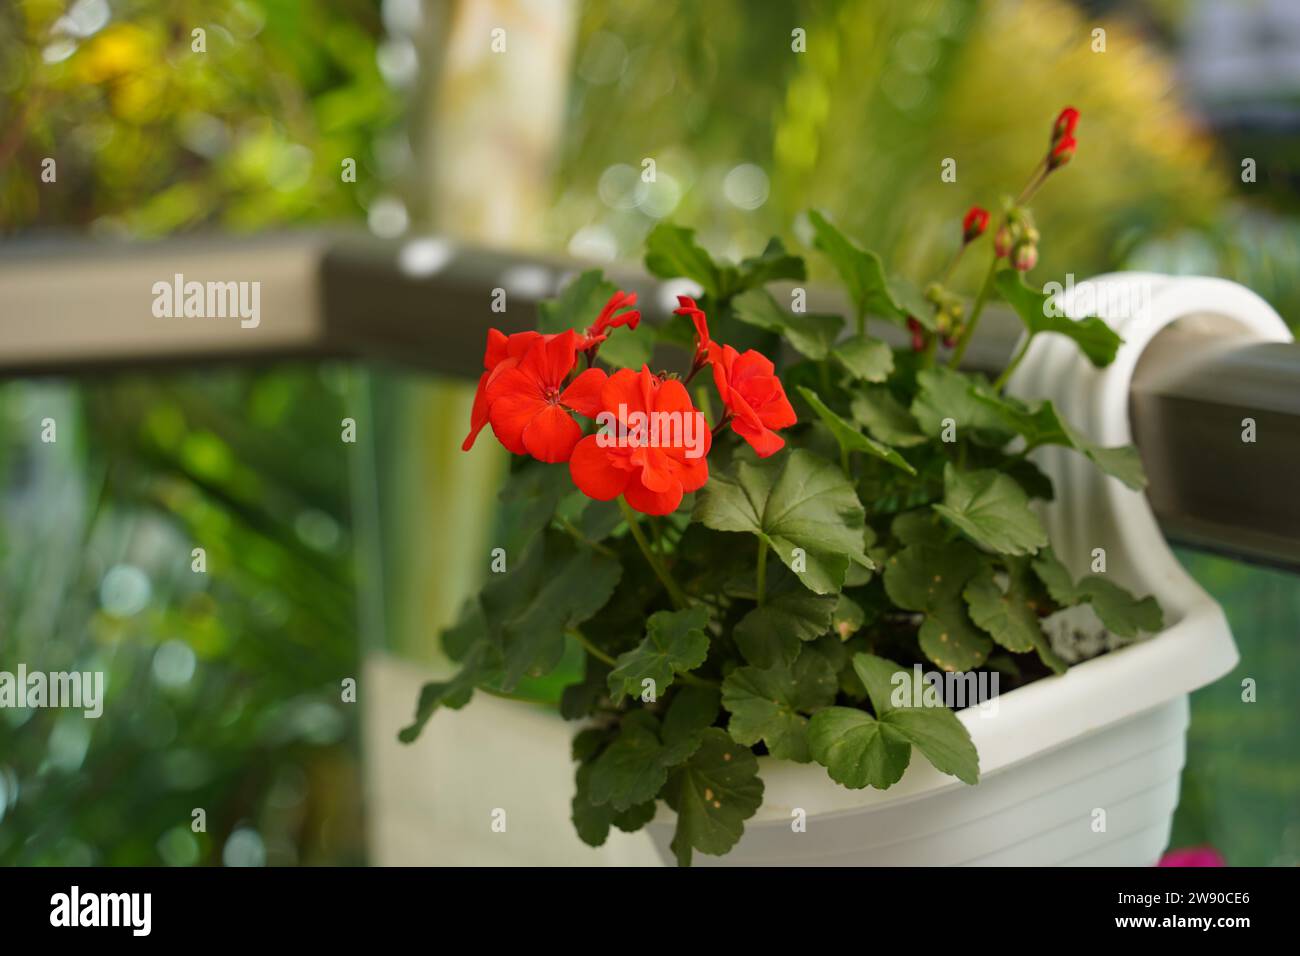 Red garden geranium flowers in pot. Pelargonium Stock Photo